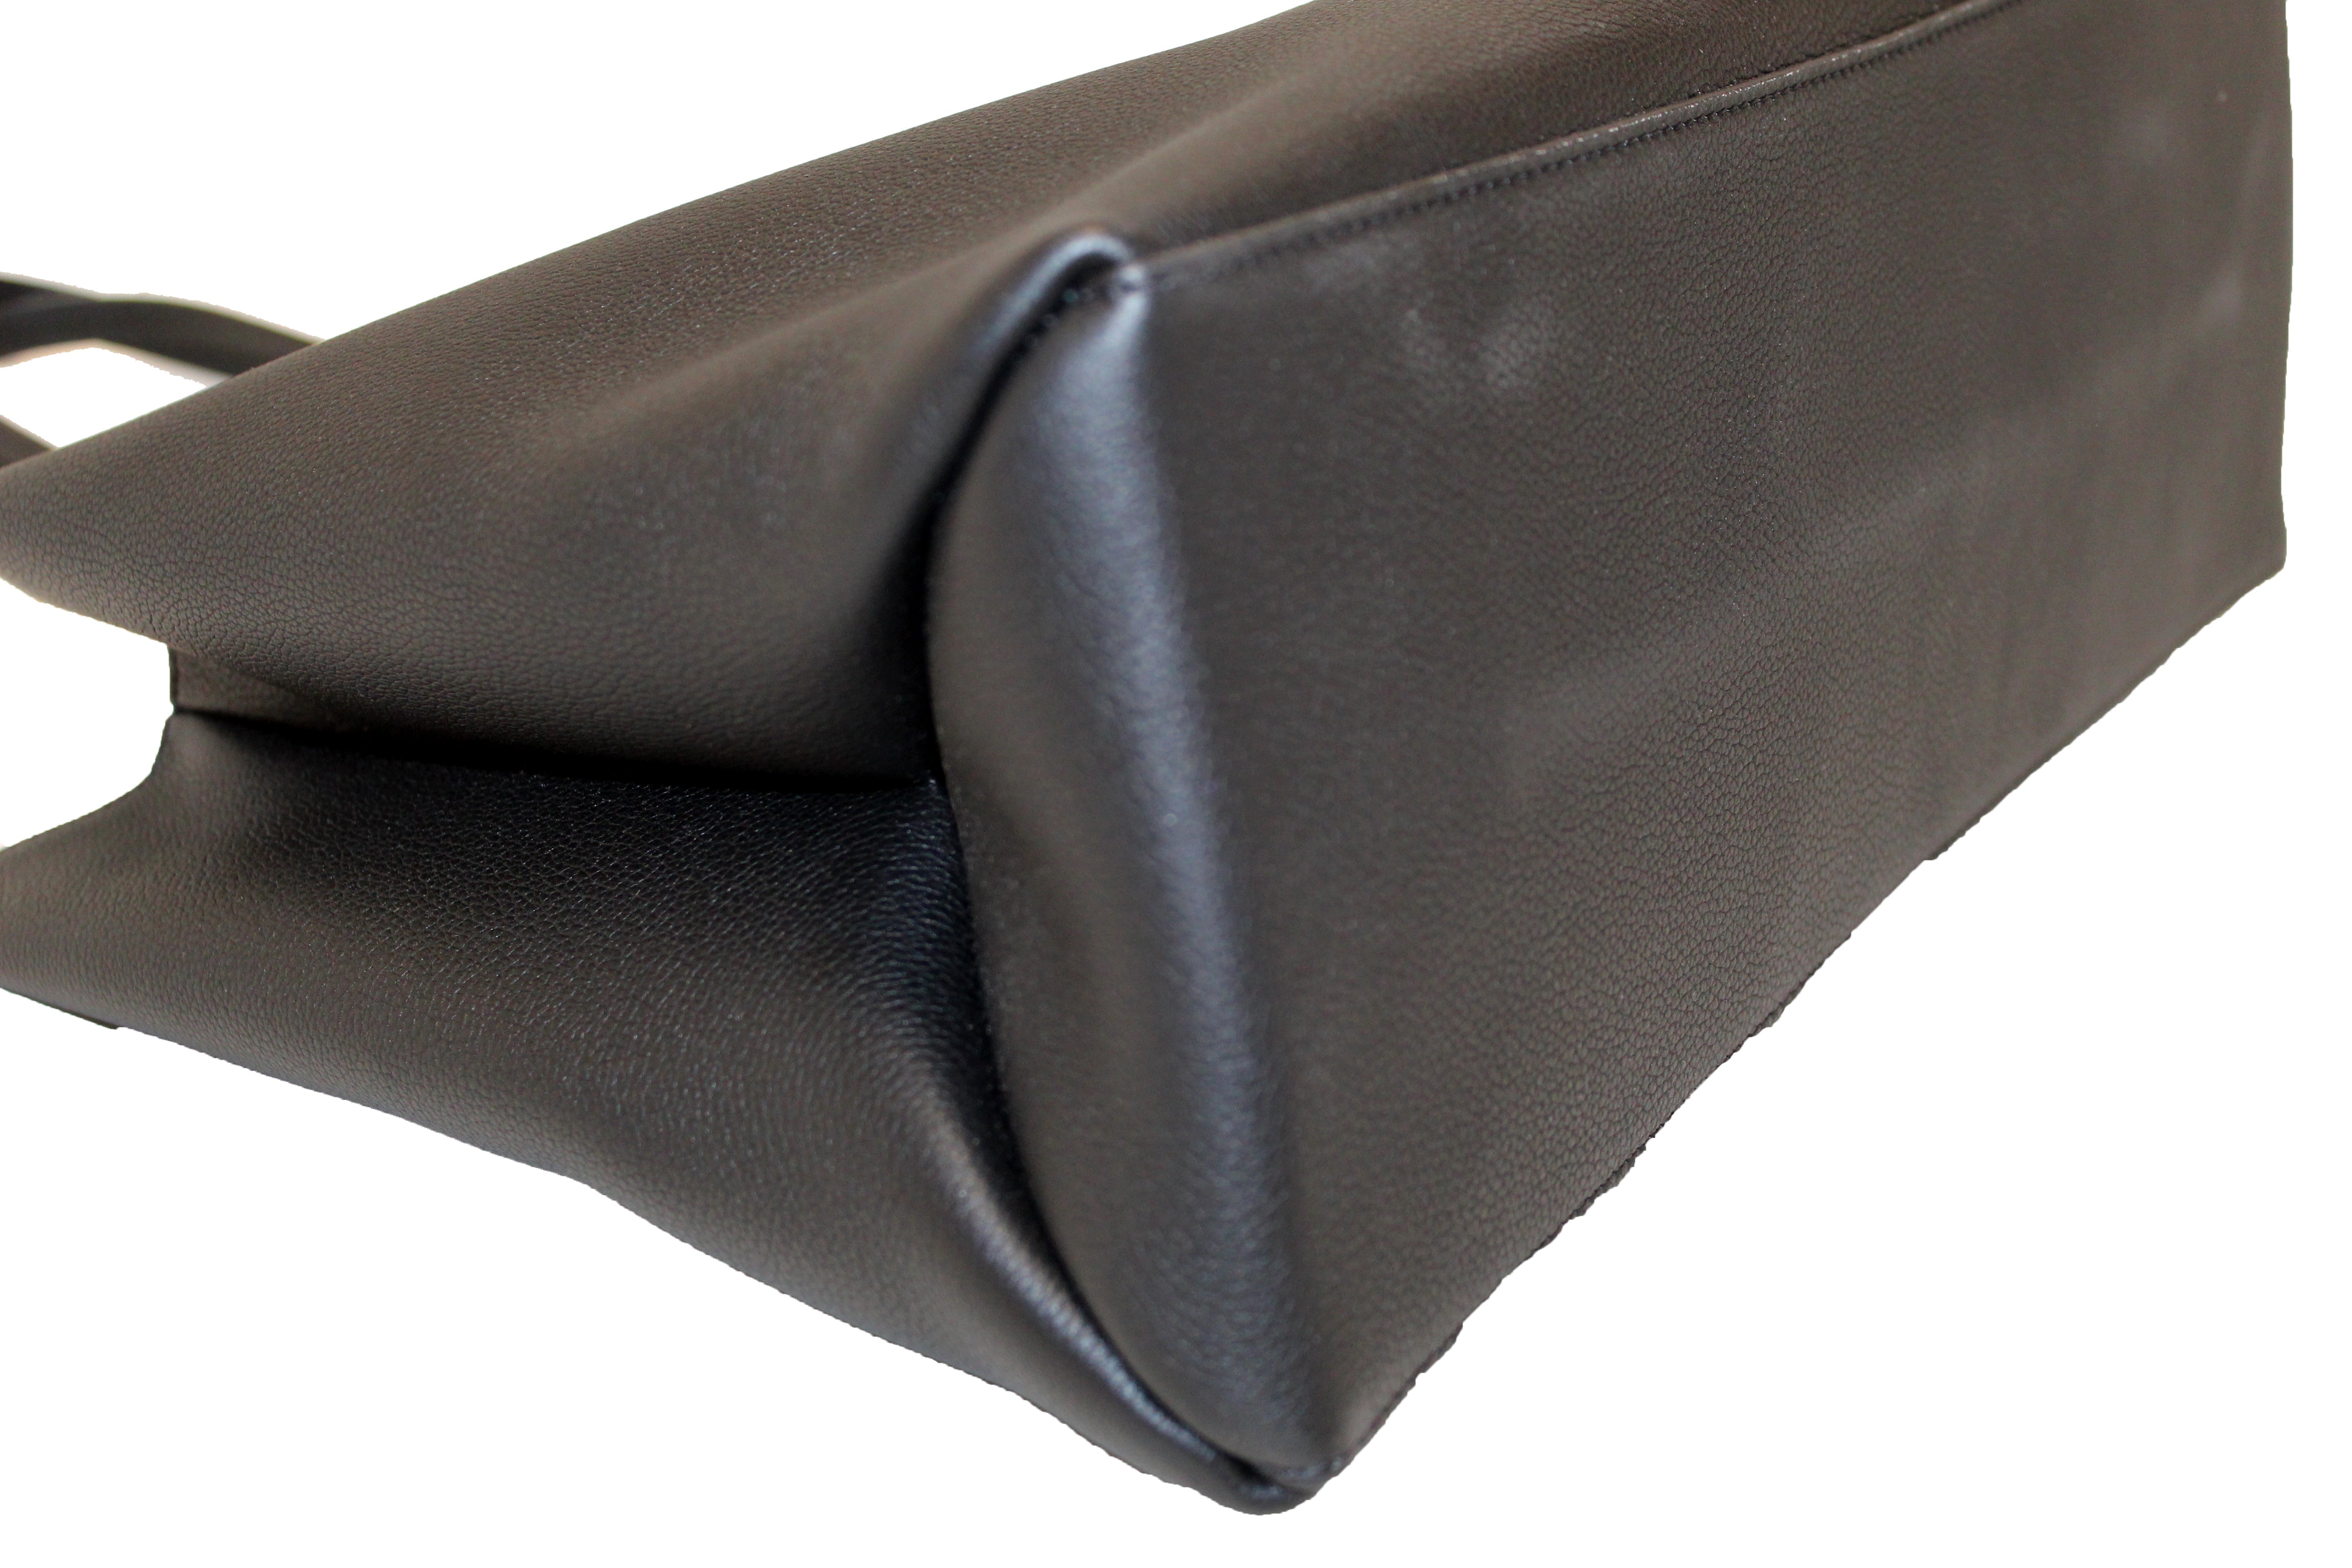 Authentic Louis Vuitton Black Calf Leather Lockme Shopper Tote Bag